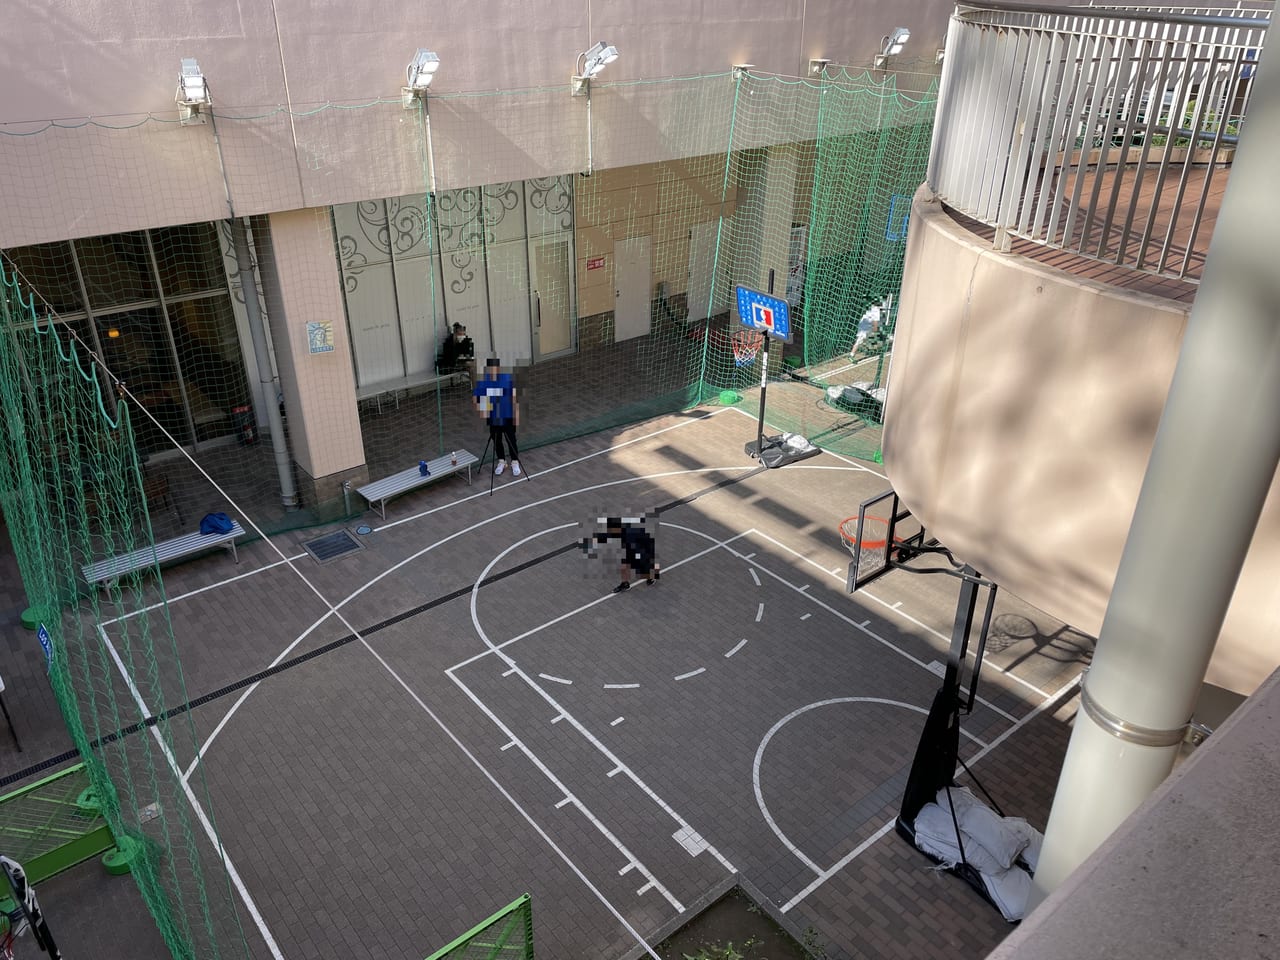 横浜市港北区 寒い日はバスケで温まろう お買い物ついでに出来るバスケットコートがトレッサ横浜にあるんです 号外net 横浜市港北区